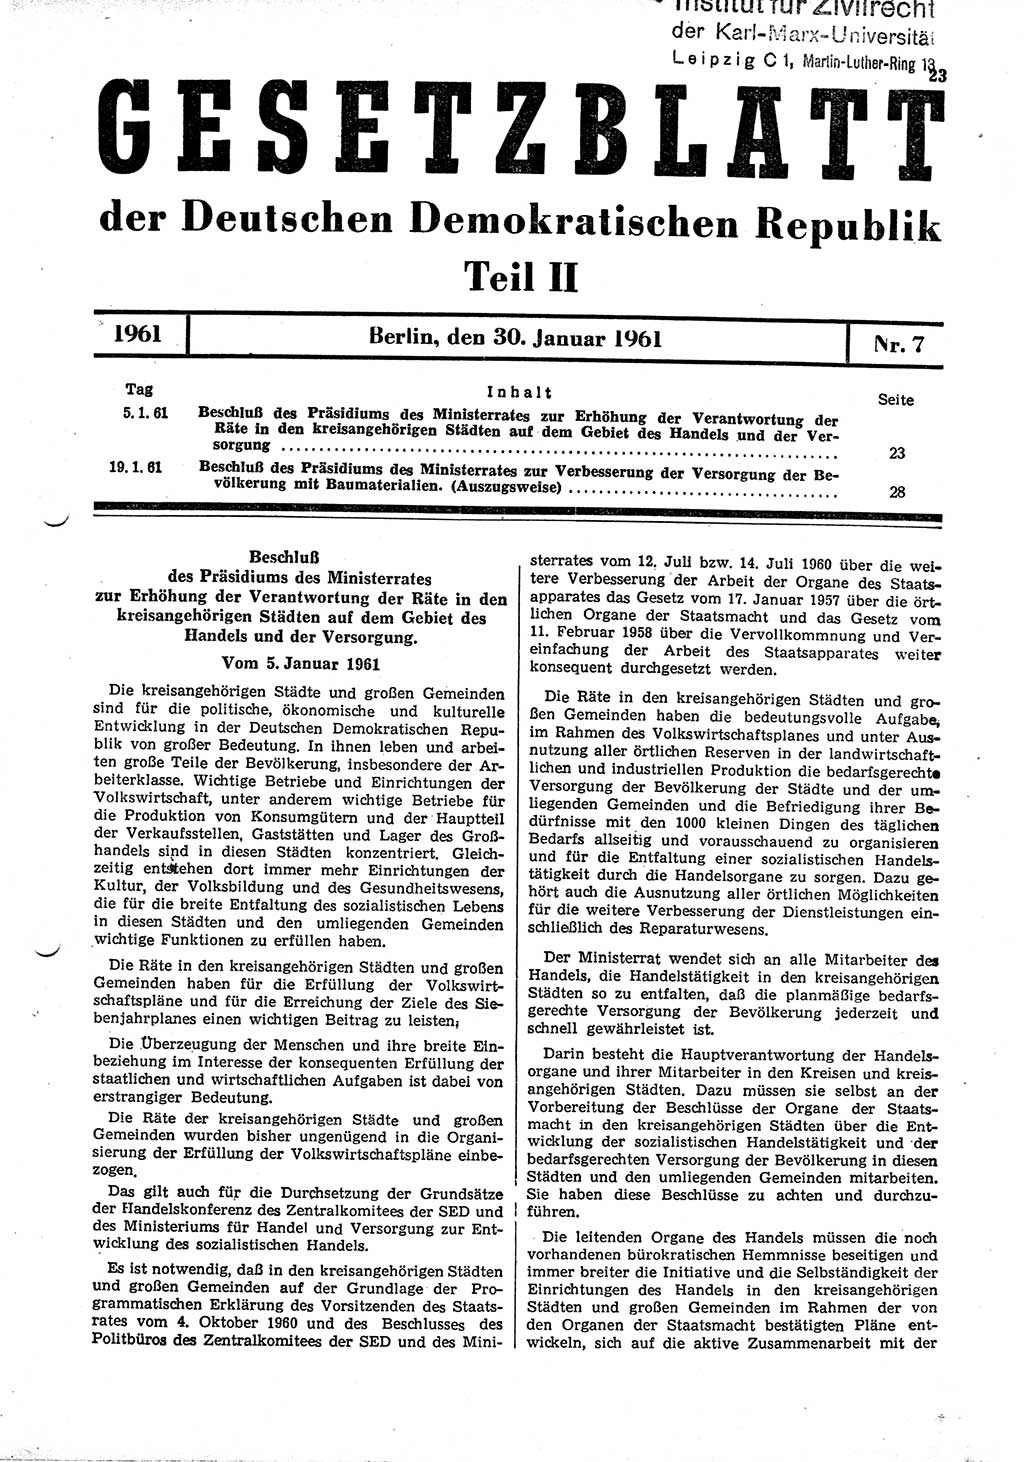 Gesetzblatt (GBl.) der Deutschen Demokratischen Republik (DDR) Teil ⅠⅠ 1961, Seite 23 (GBl. DDR ⅠⅠ 1961, S. 23)